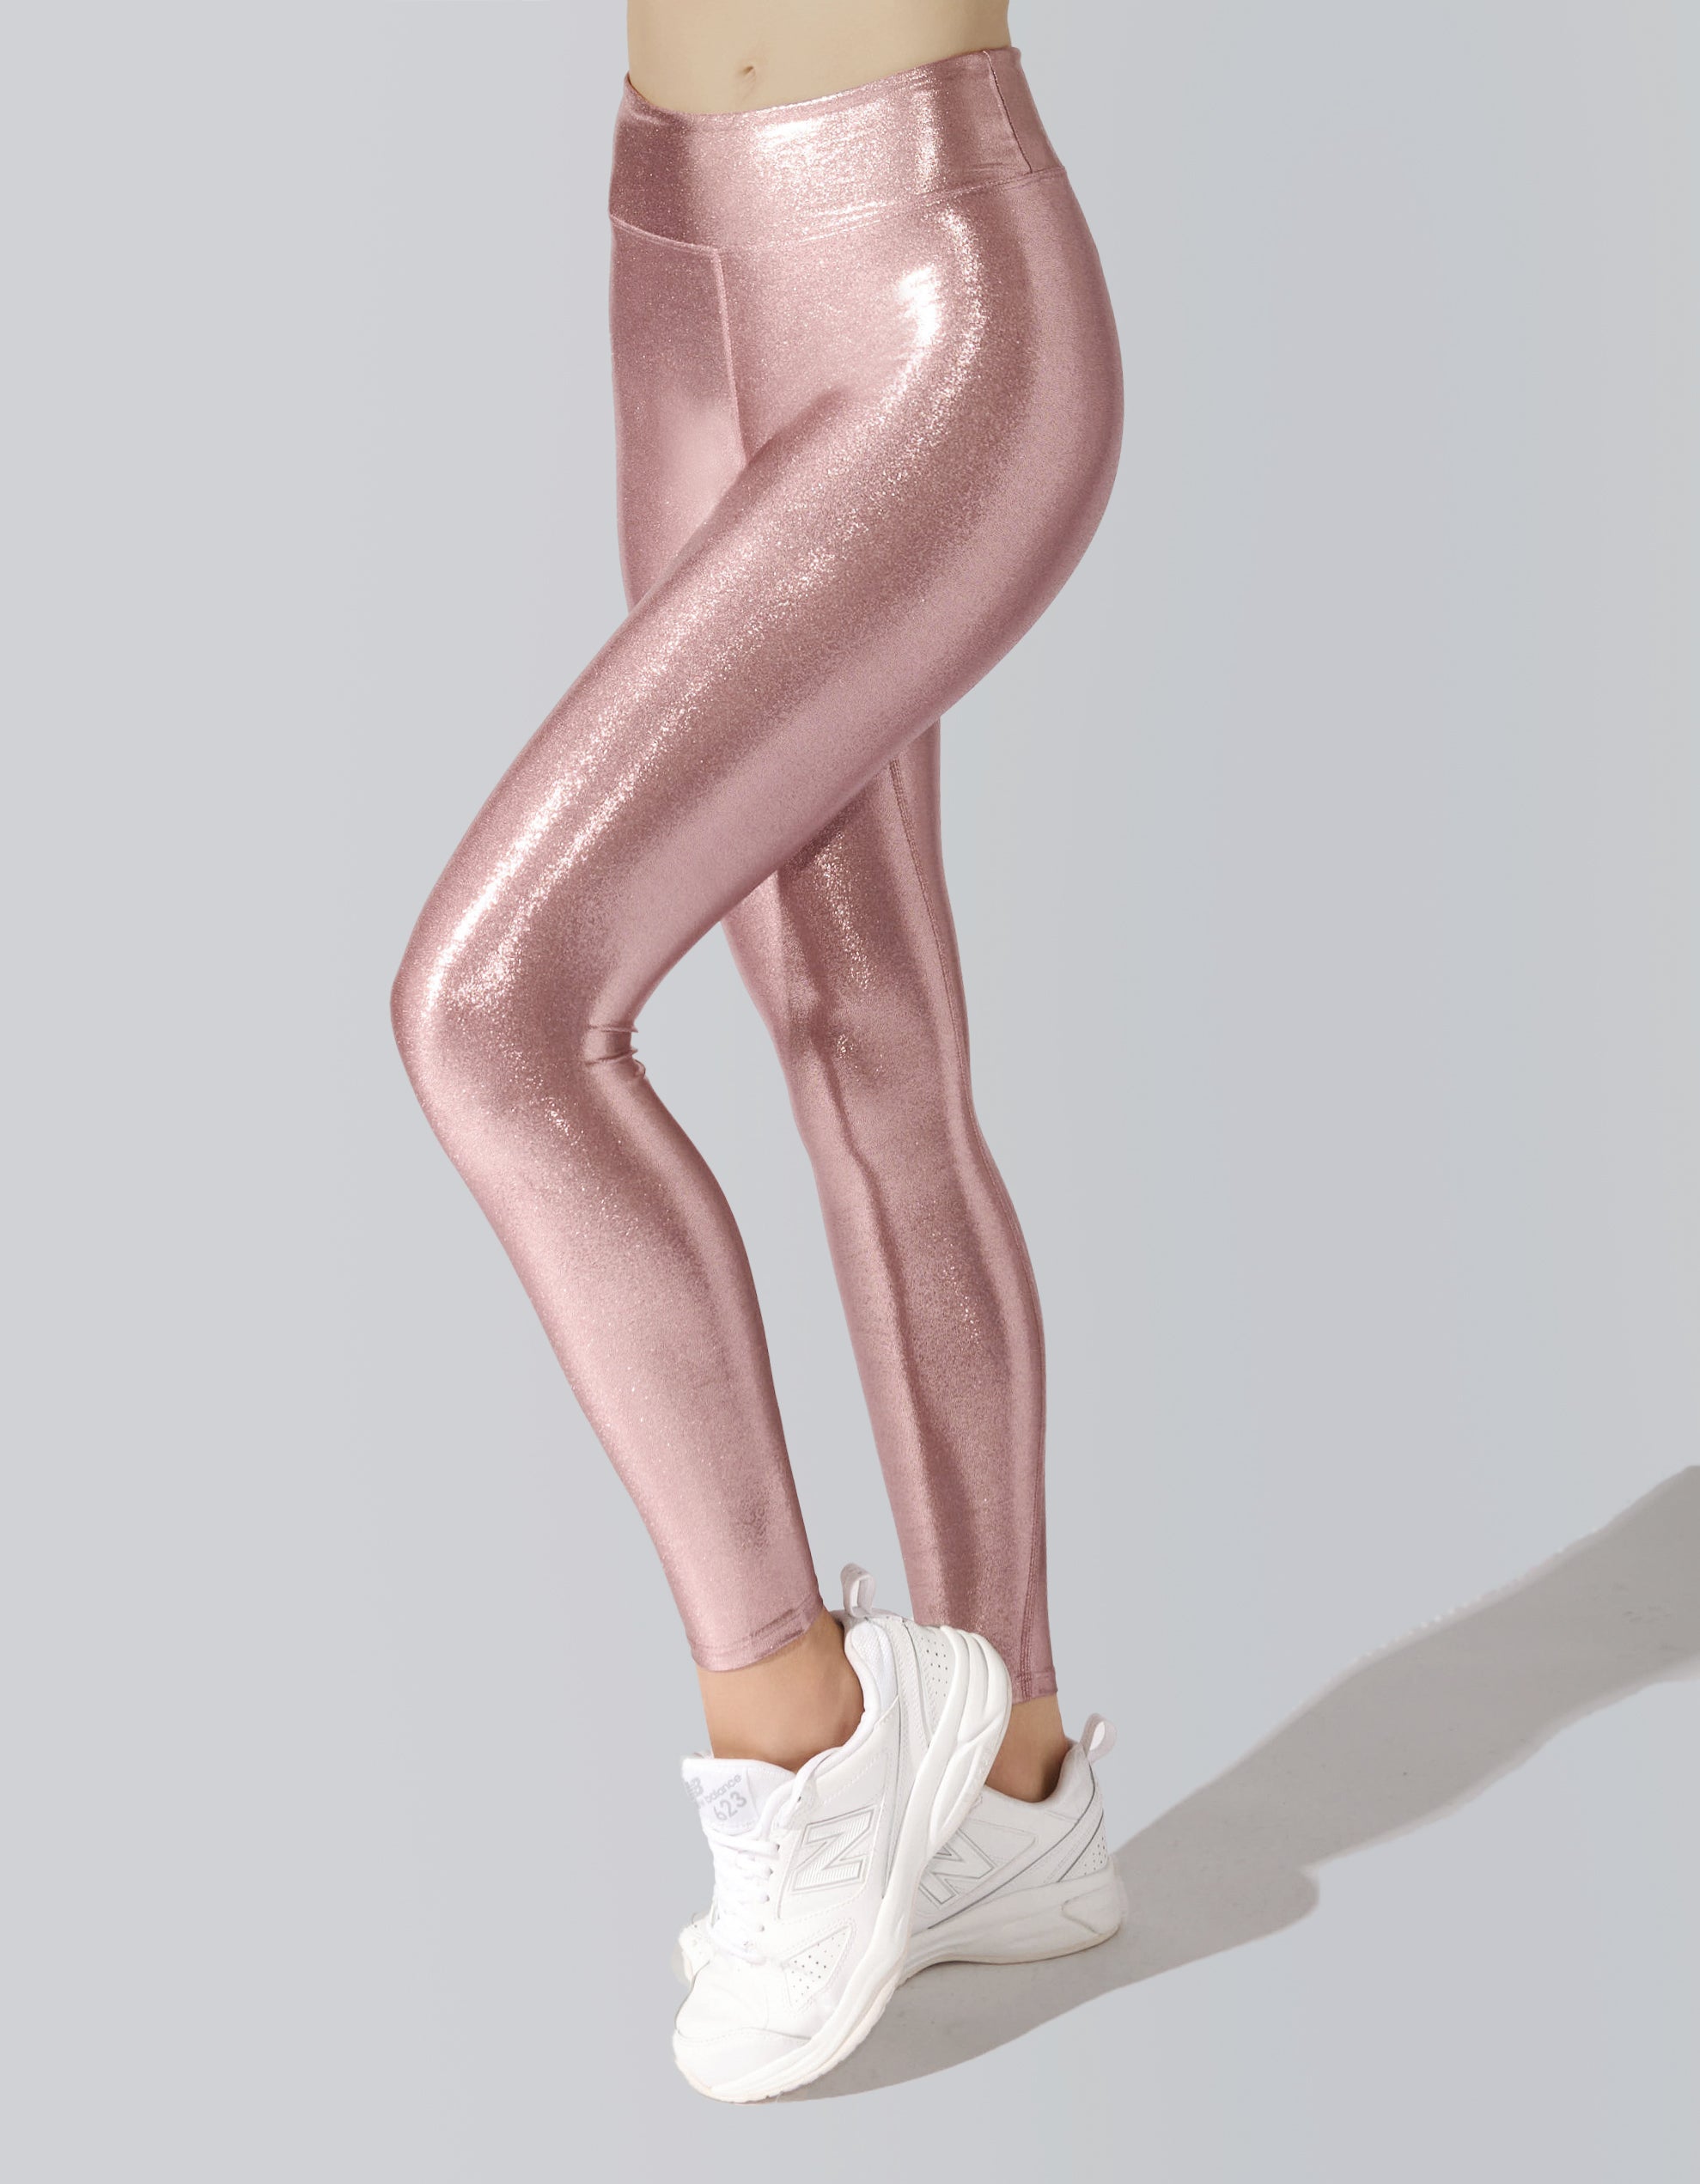 Heroine Sport Marvel Legging [ ROSE GOLD ] – HEROINE SPORT